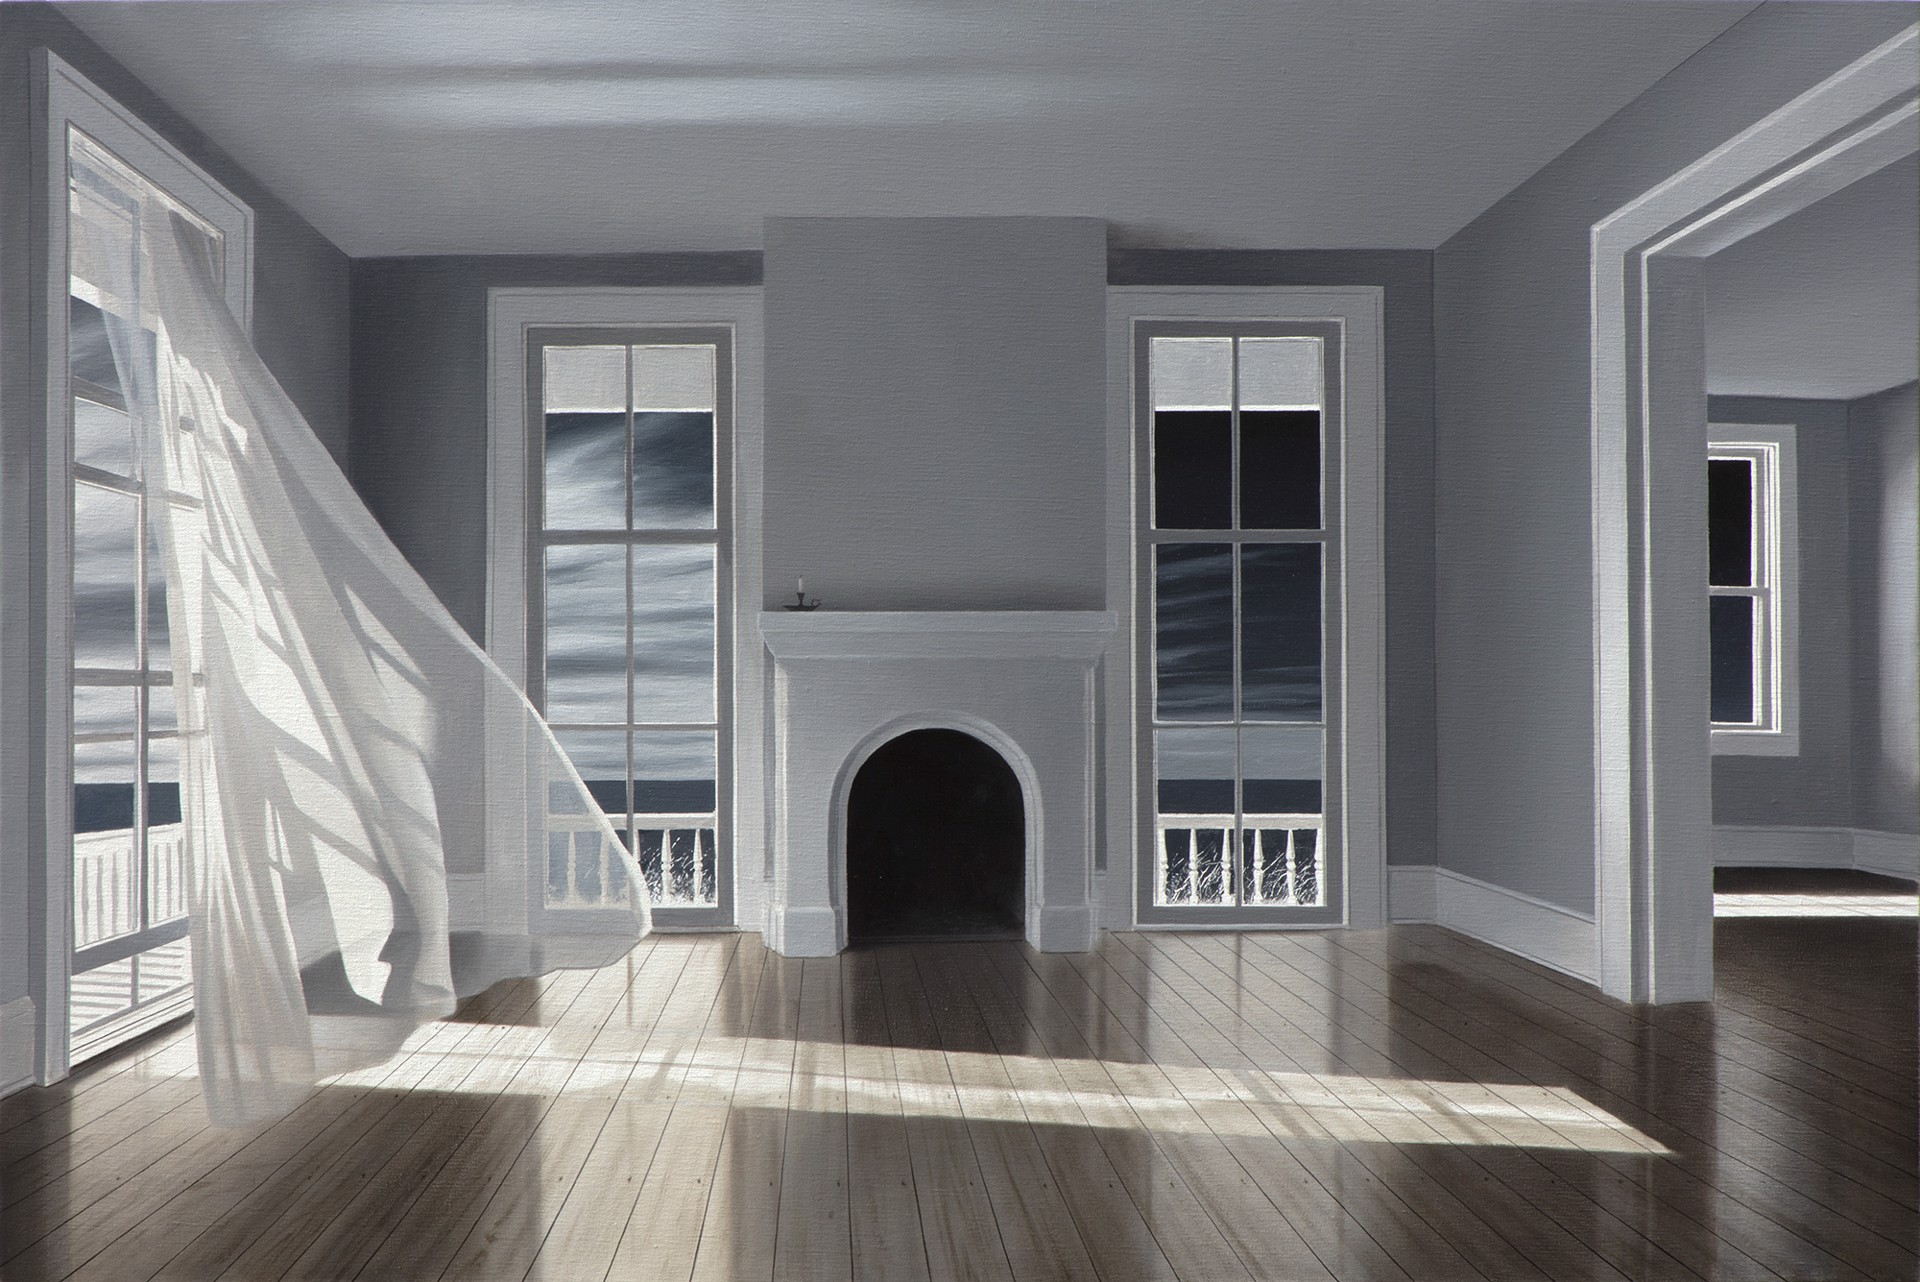 Moonlight in Empty Rooms by Alexander Volkov